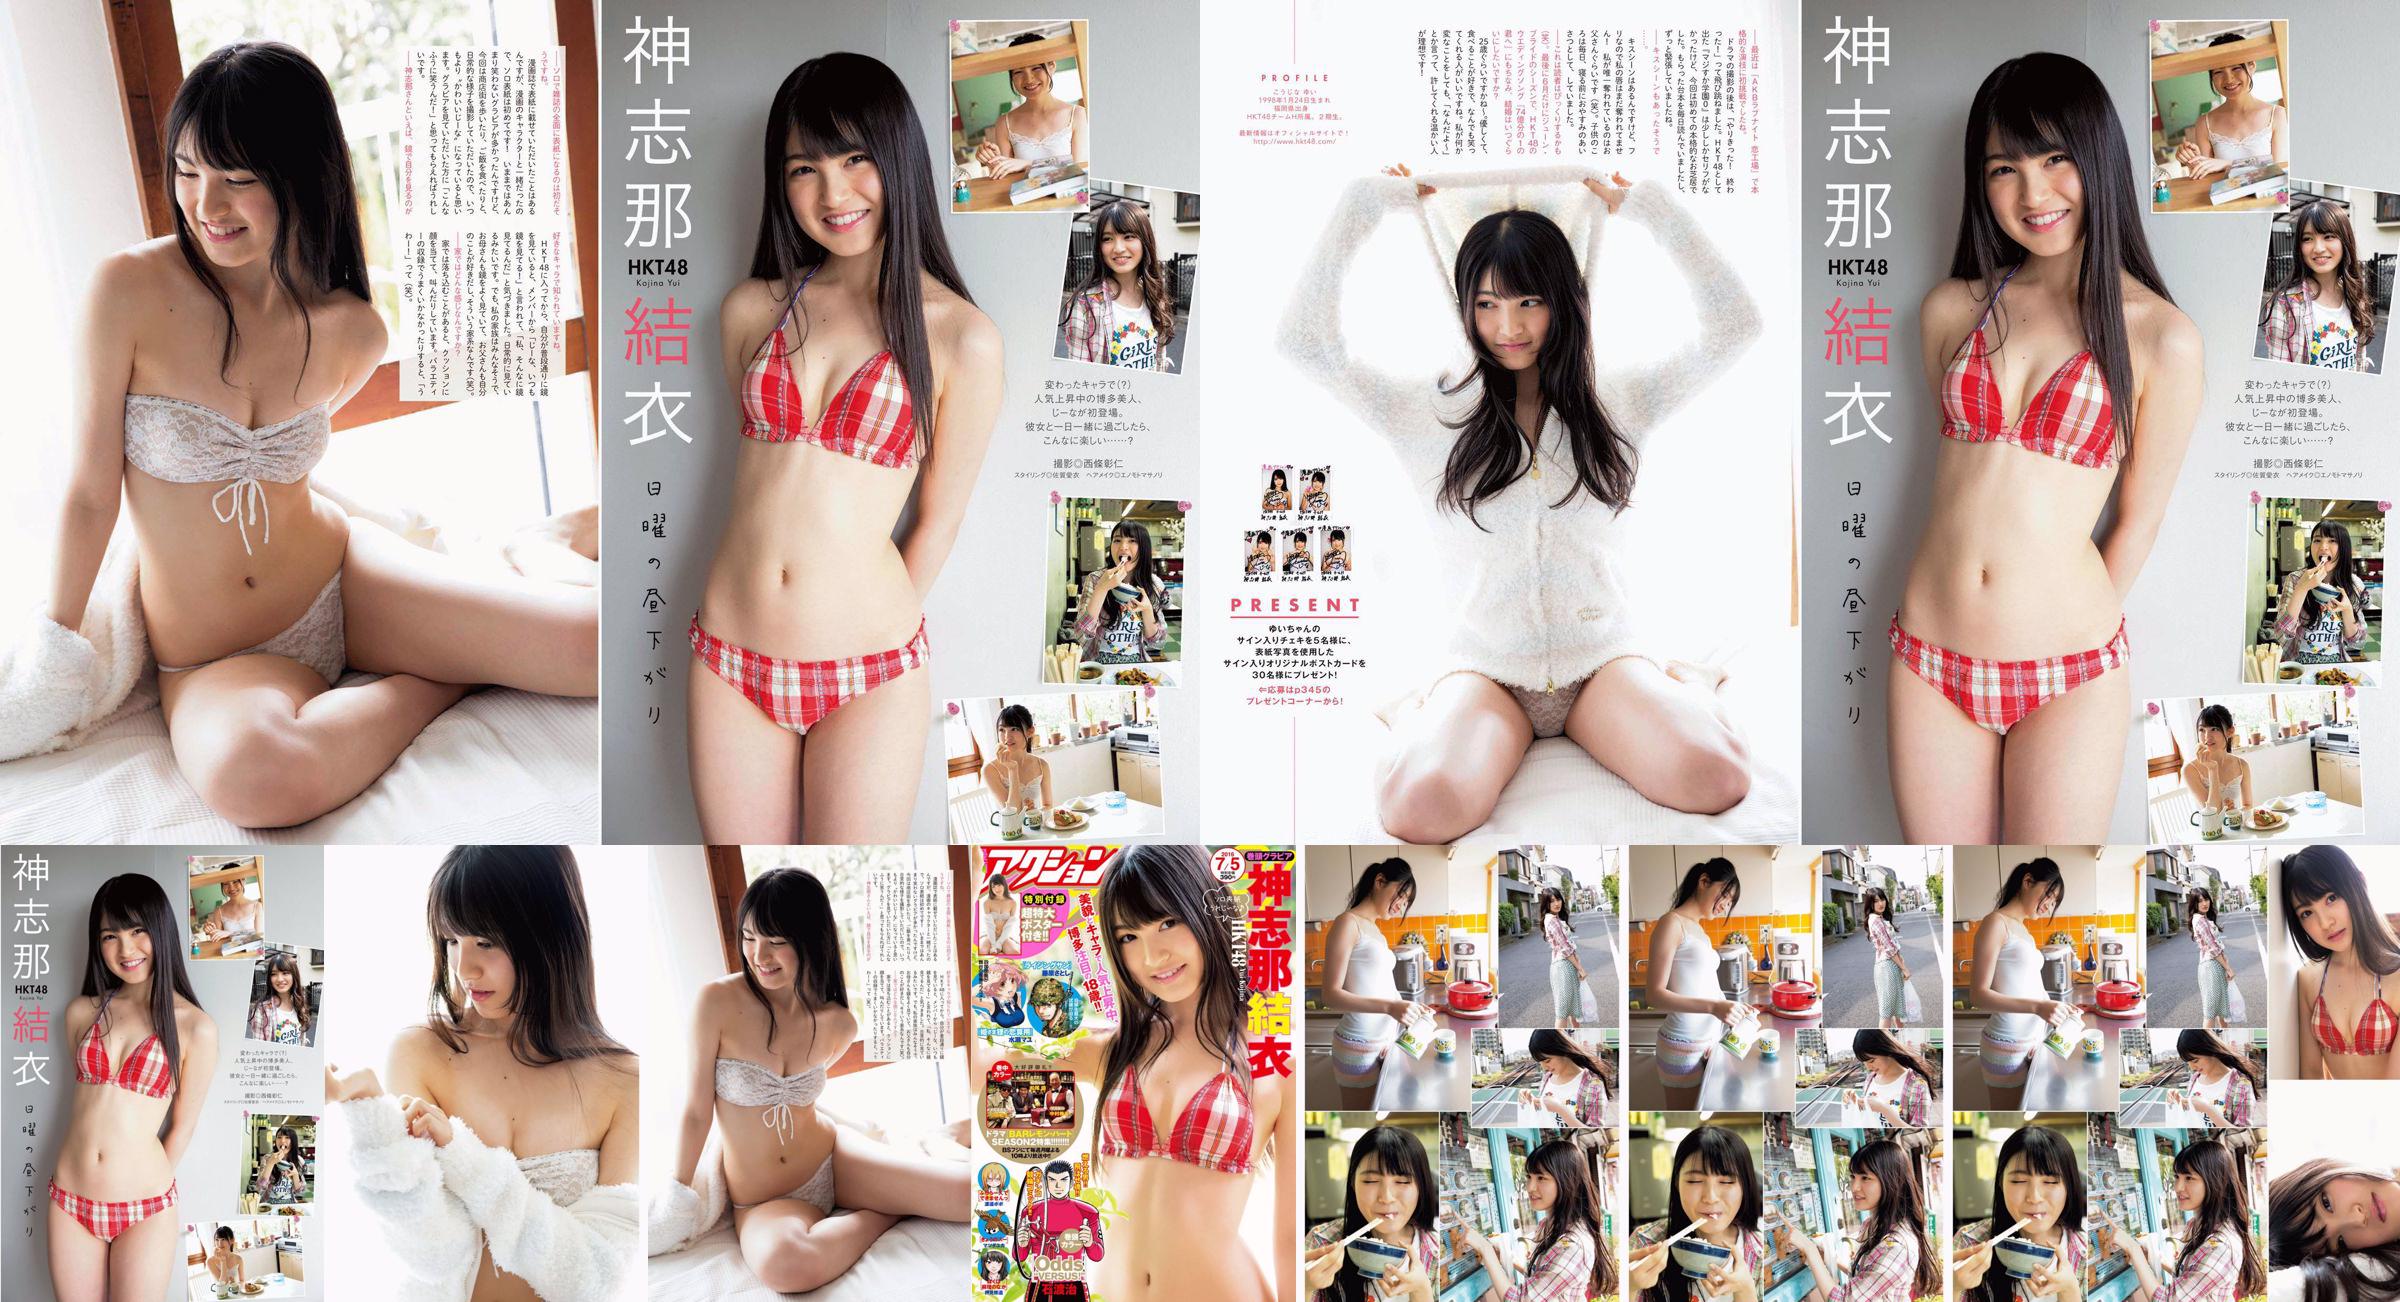 [Manga Action] Shinshina Yui 2016 No.13 Photo Magazine No.ffe448 Pagina 3